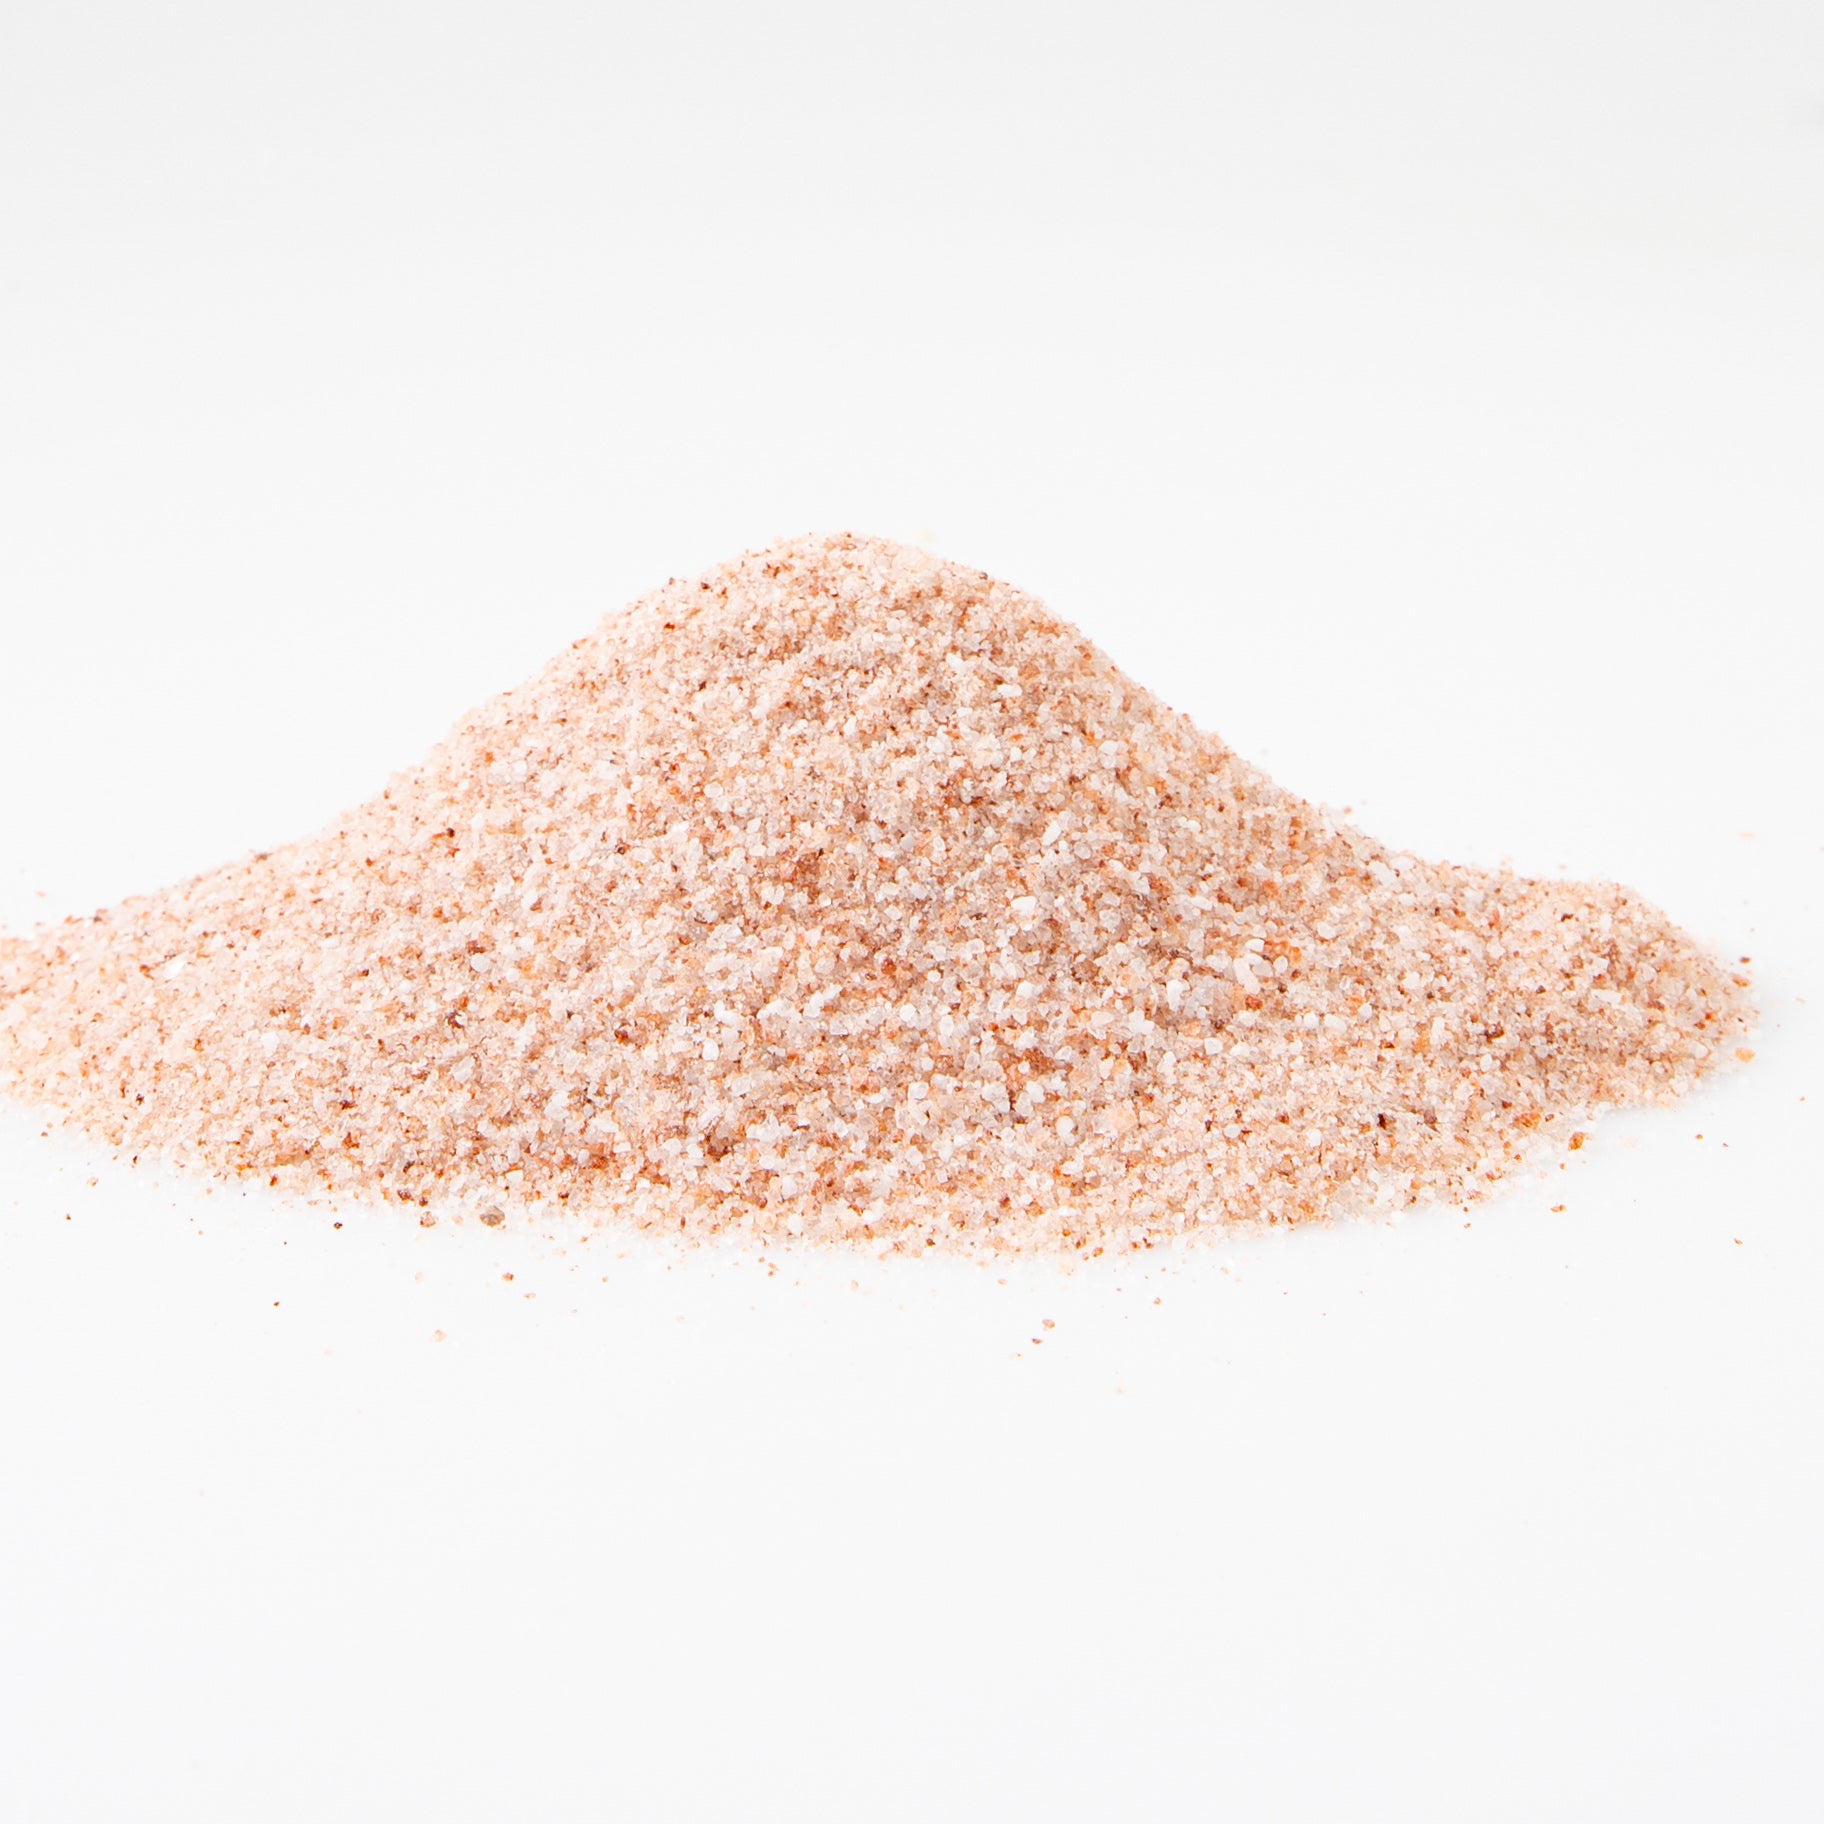 Himalayan Salt - Fine (Salts) Image 1 - Naked Foods